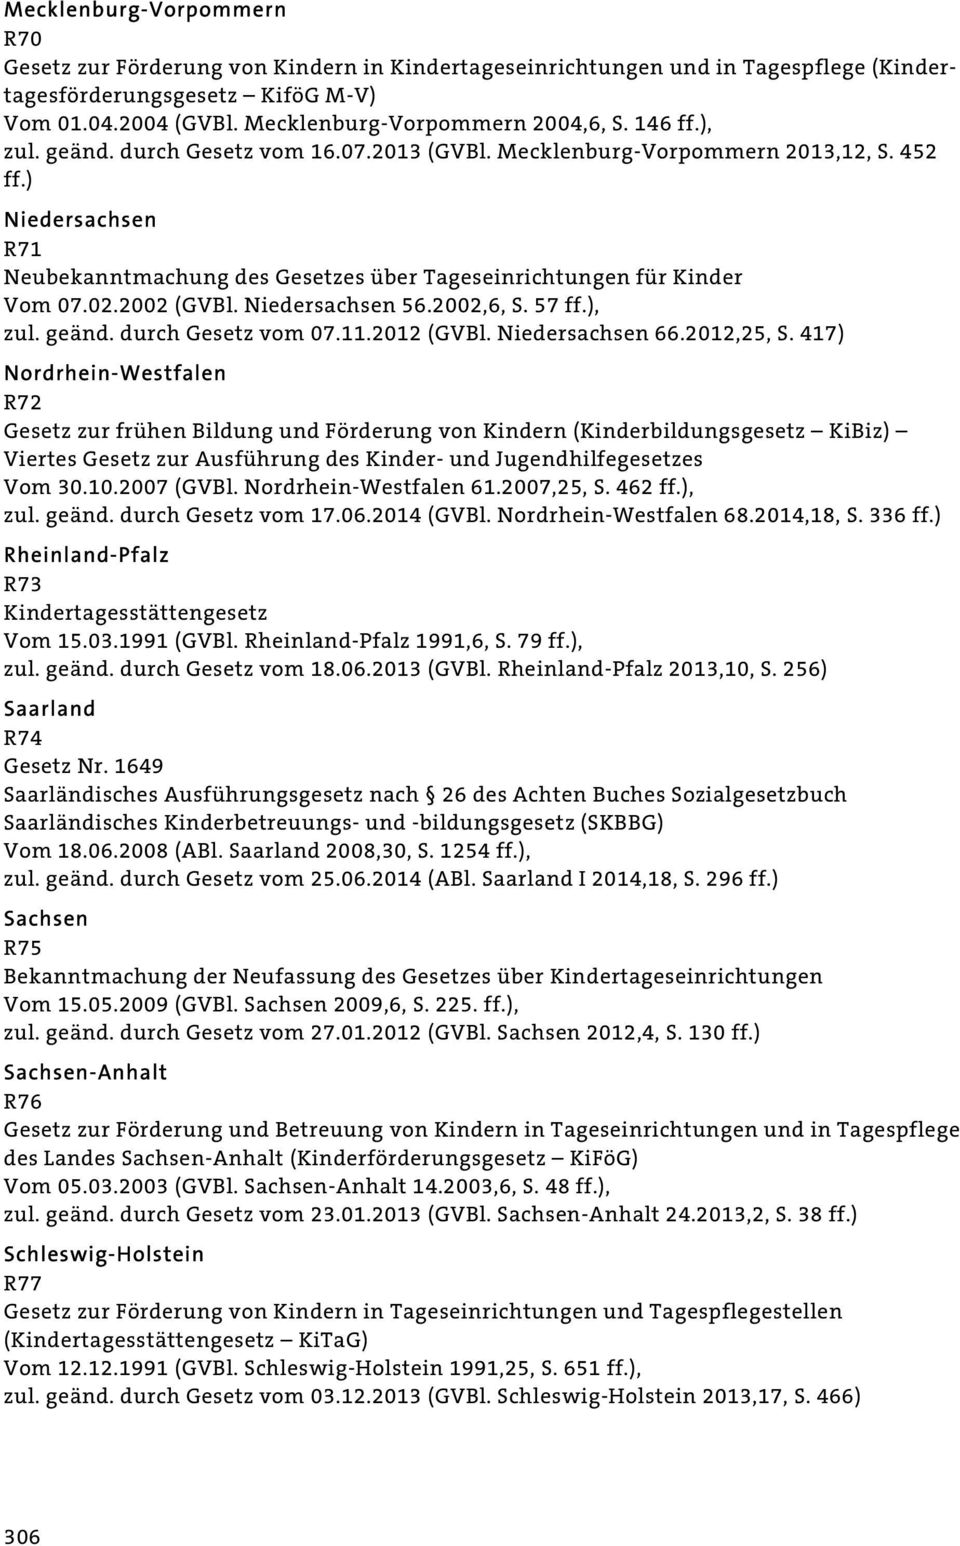 ) Niedersachsen R71 Neubekanntmachung des Gesetzes über Tageseinrichtungen für Kinder Vom 07.02.2002 (GVBl. Niedersachsen 56.2002,6, S. 57 ff.), zul. geänd. durch Gesetz vom 07.11.2012 (GVBl.